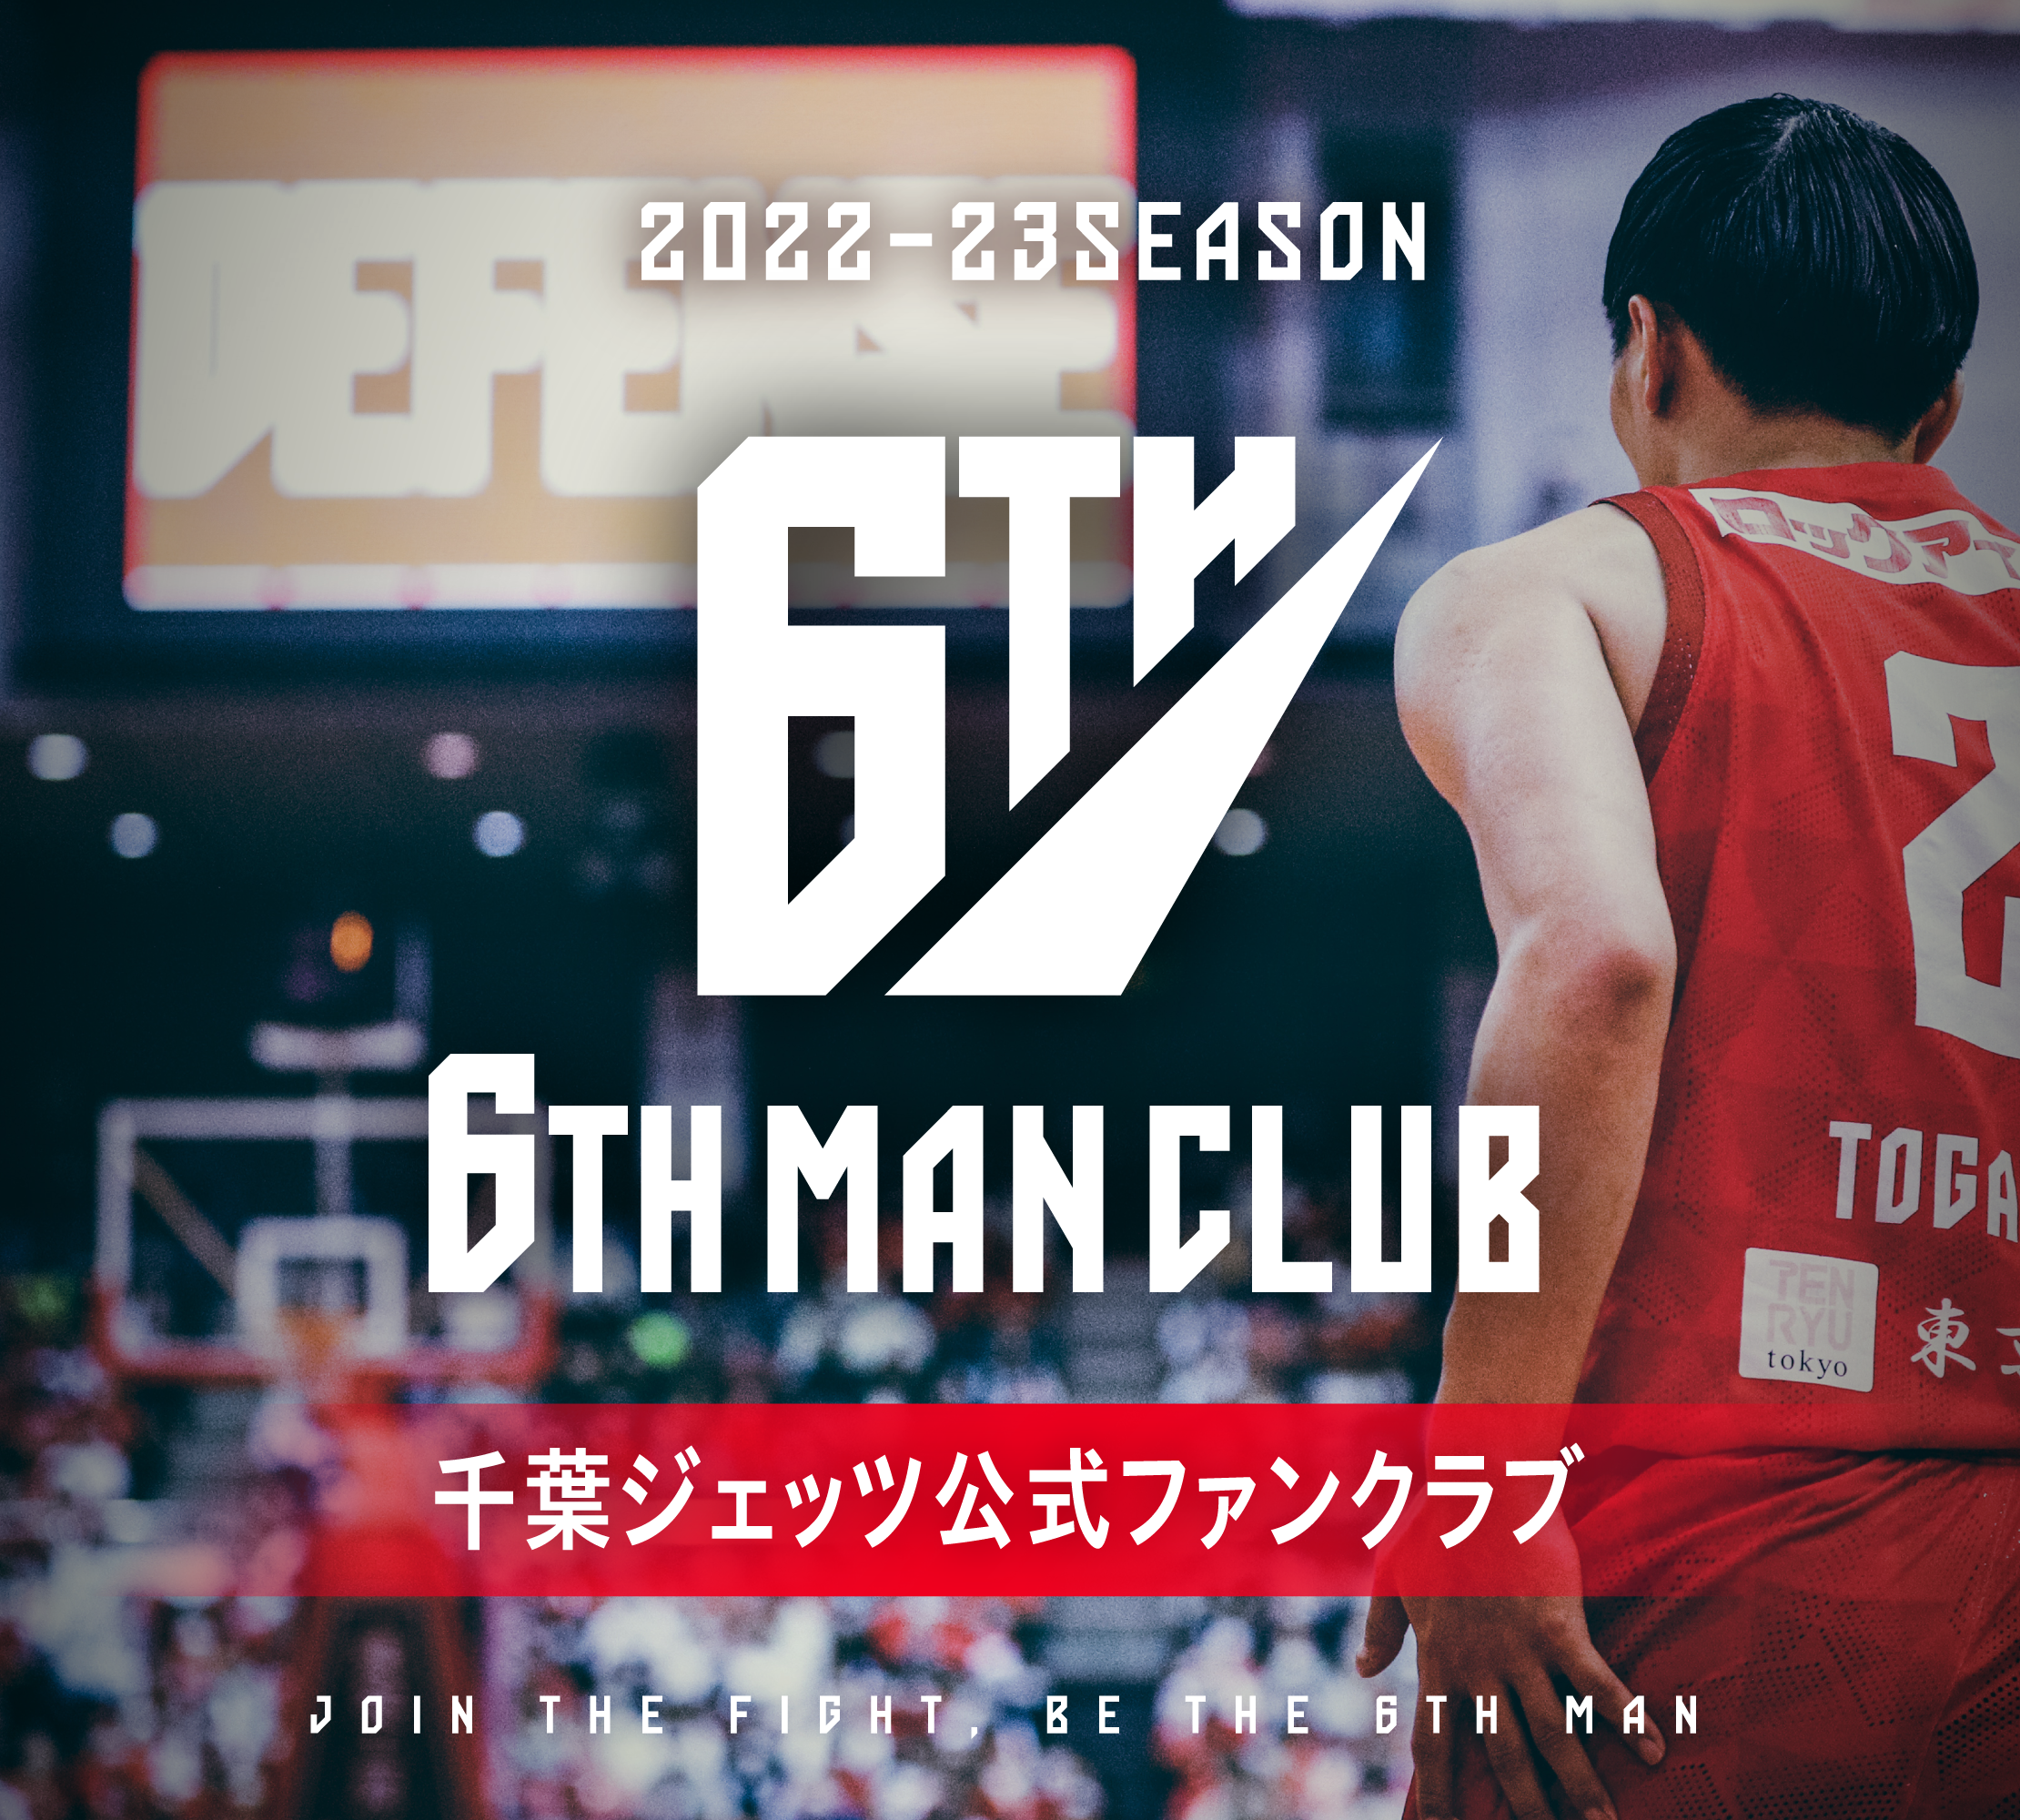 2022-23シーズン千葉ジェッツ公式ファンクラブ「6TH MAN CLUB」概要の